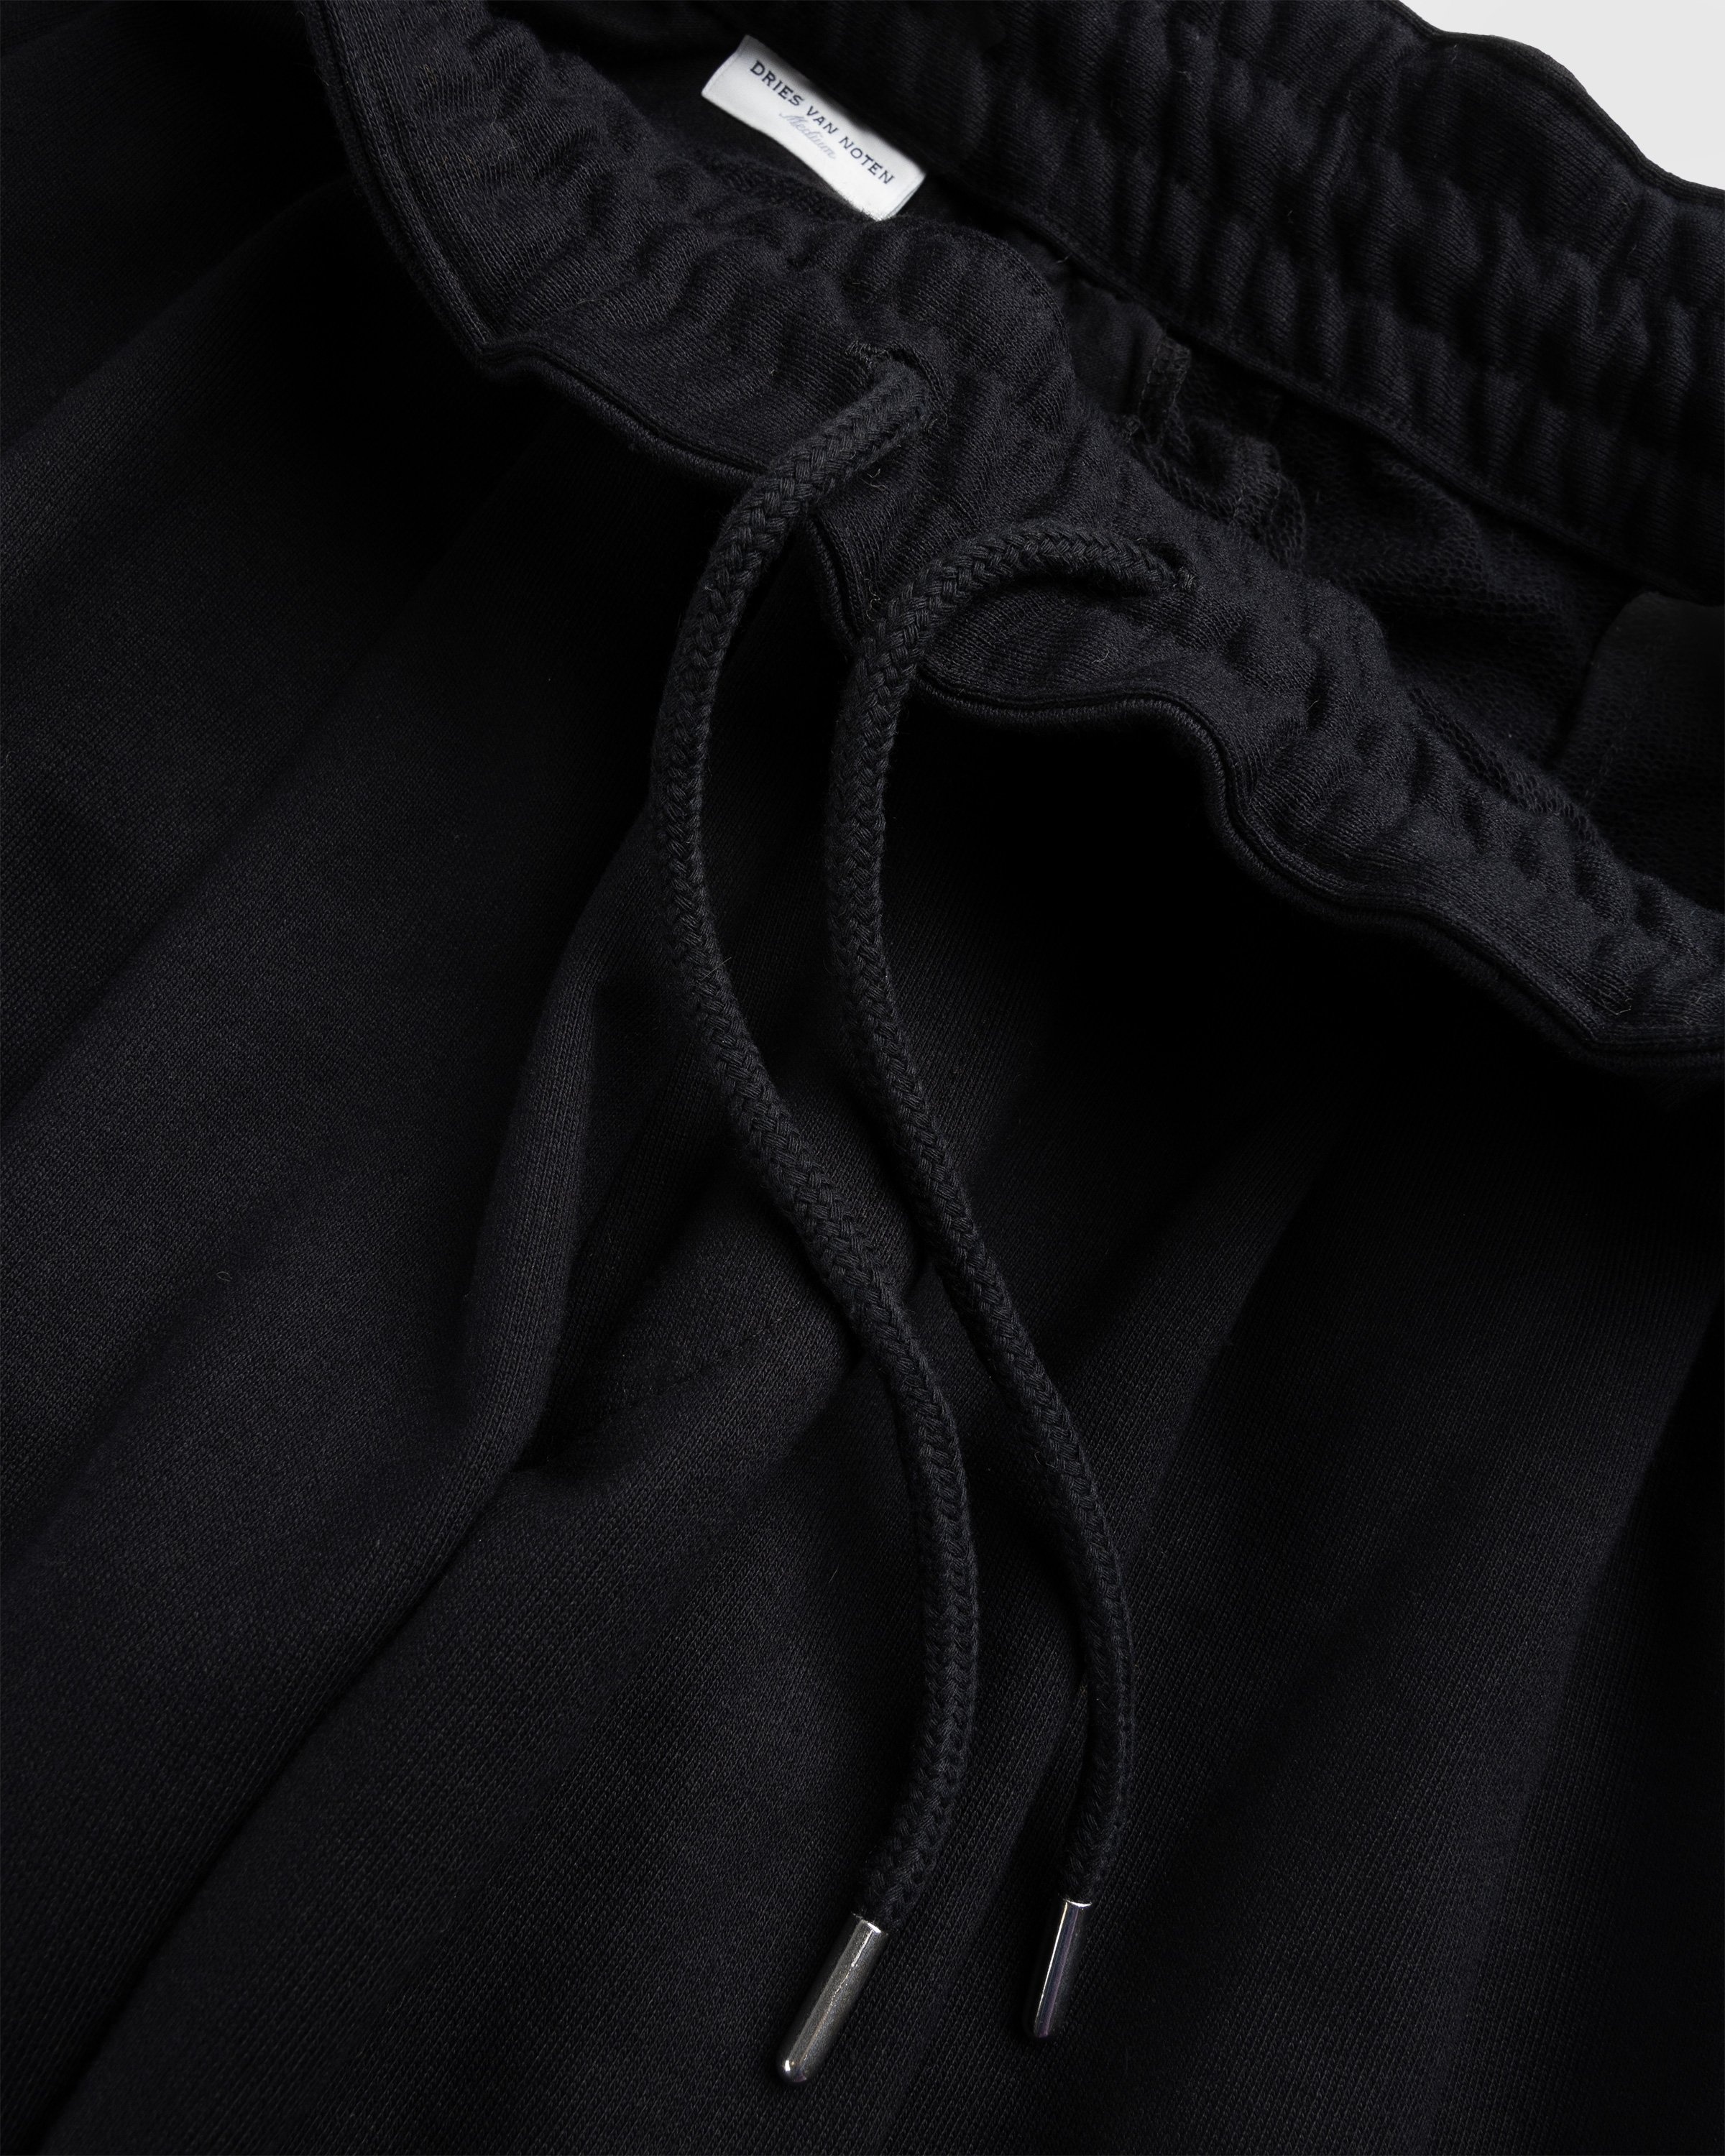 Dries van Noten – Hama Cotton Jersey Pants Black - Tops - Black - Image 6